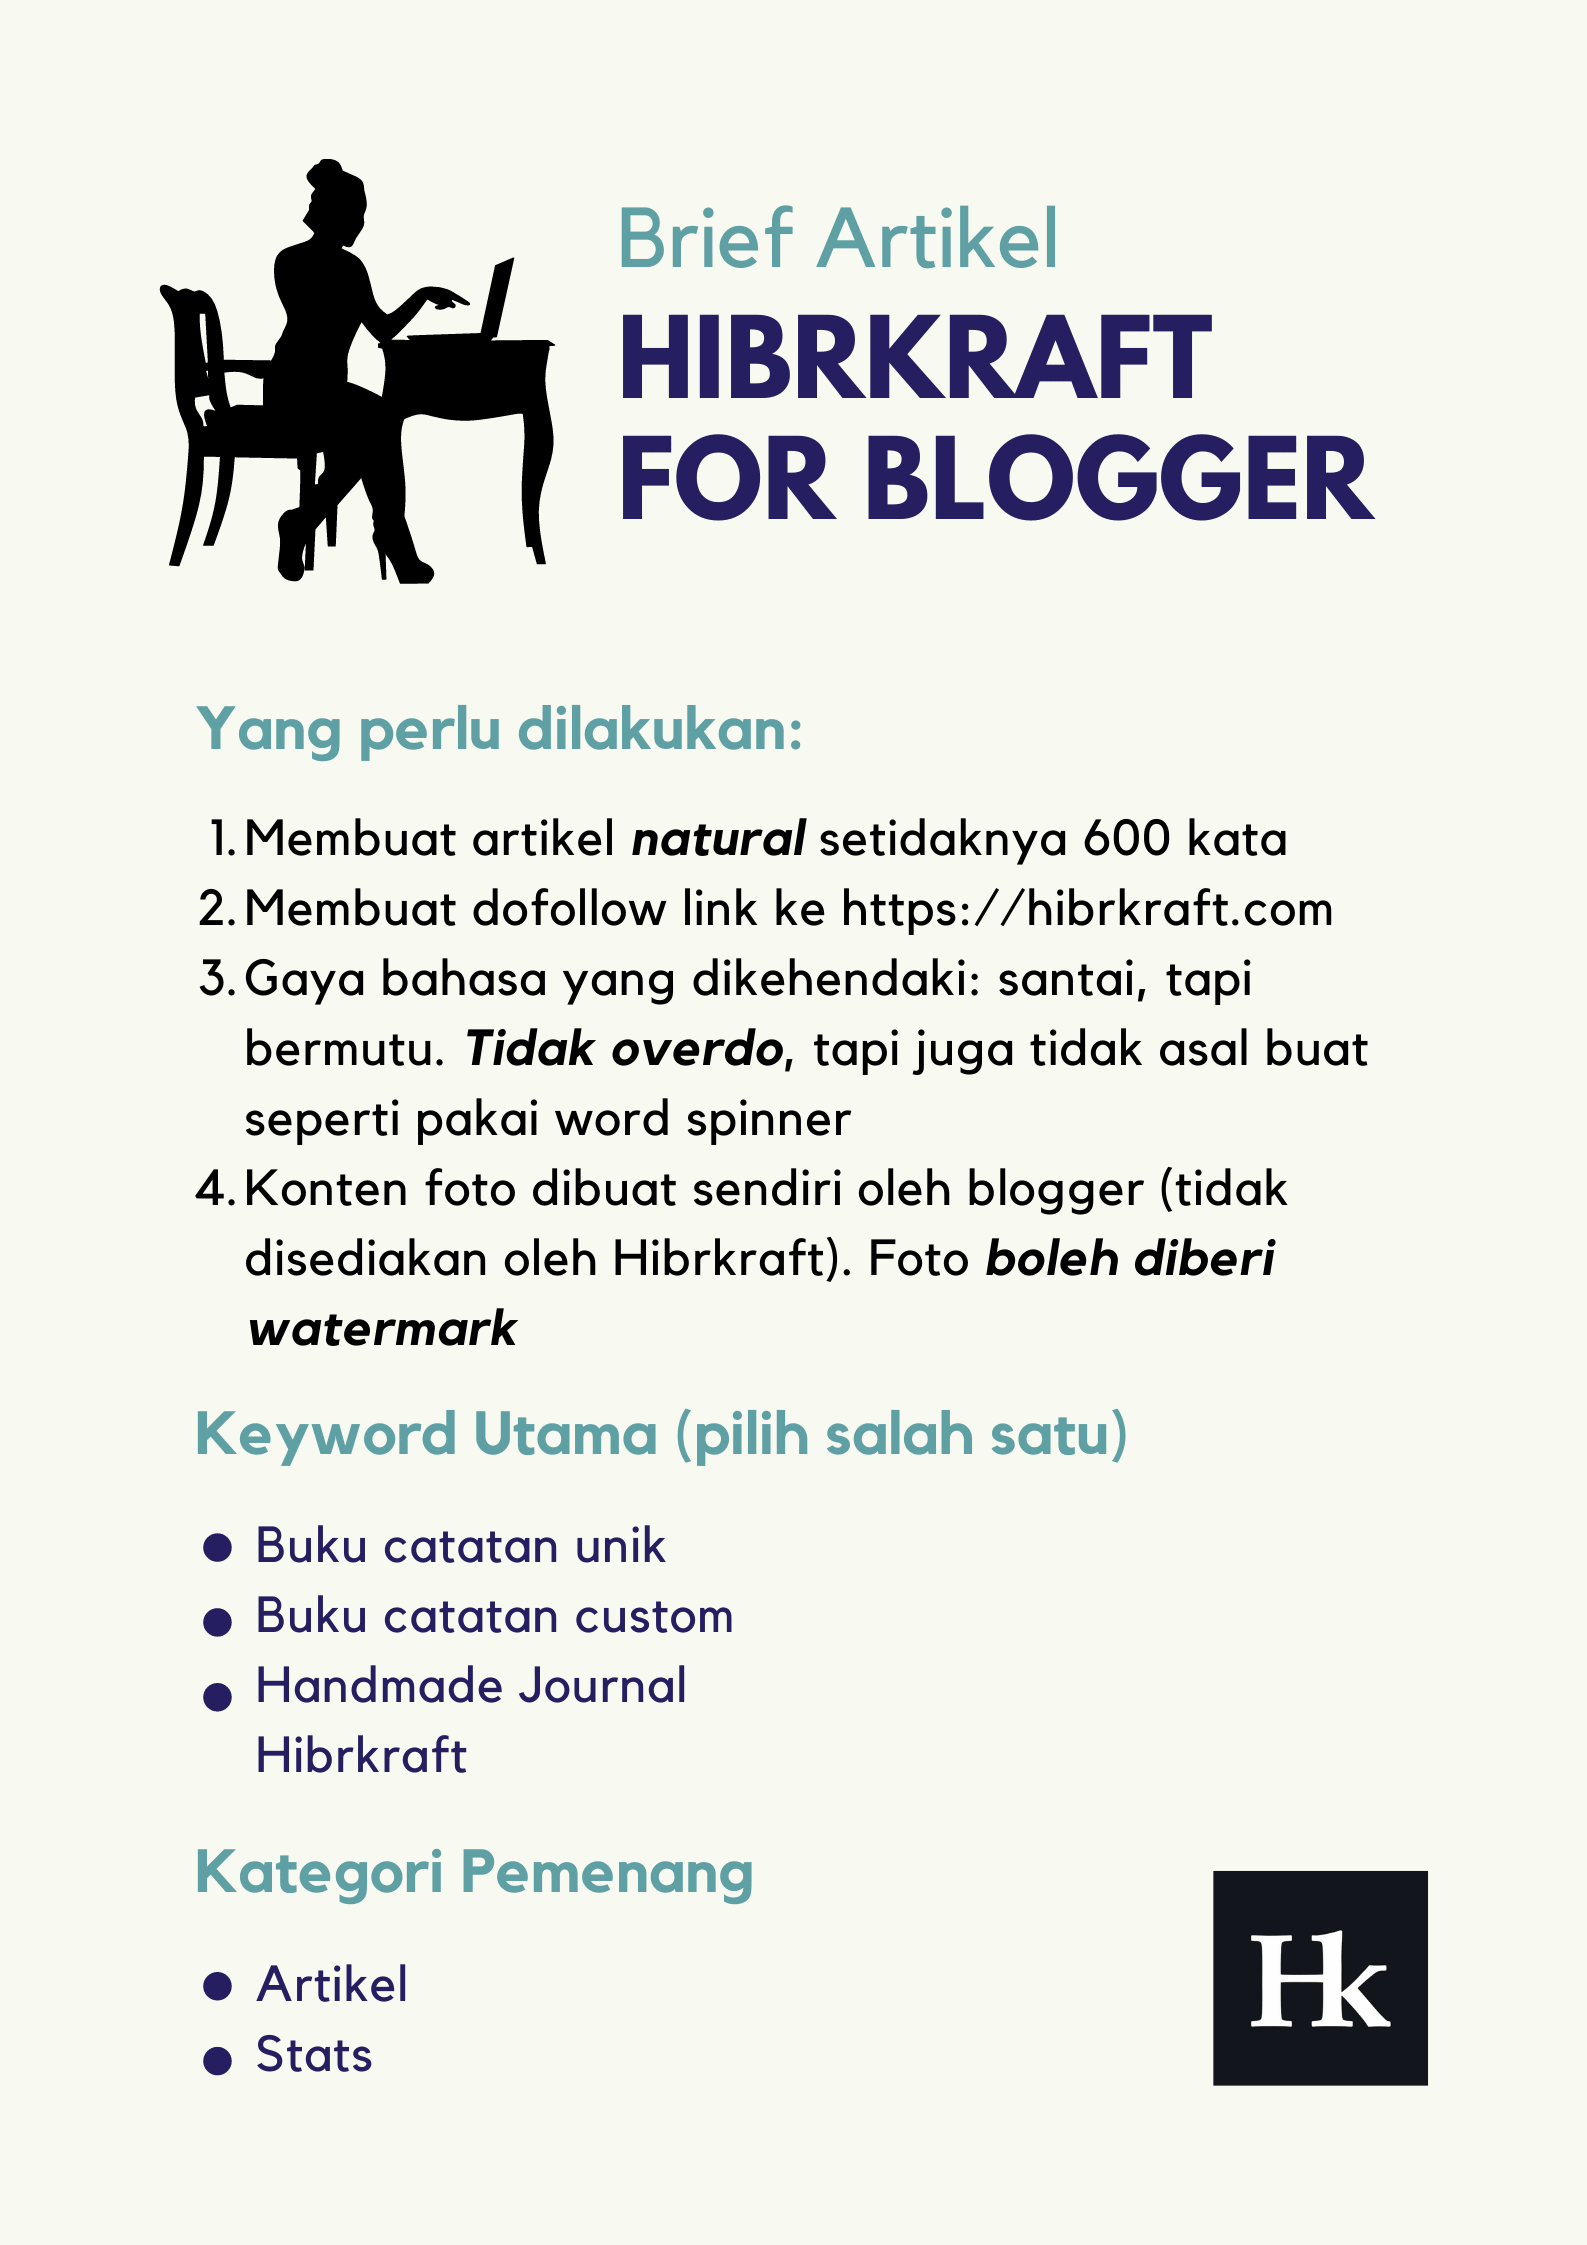 hibrkraft untuk blogger indonesia - hibrkraft handmade journal - jurnal dan agenda kulit - buku catatan custom